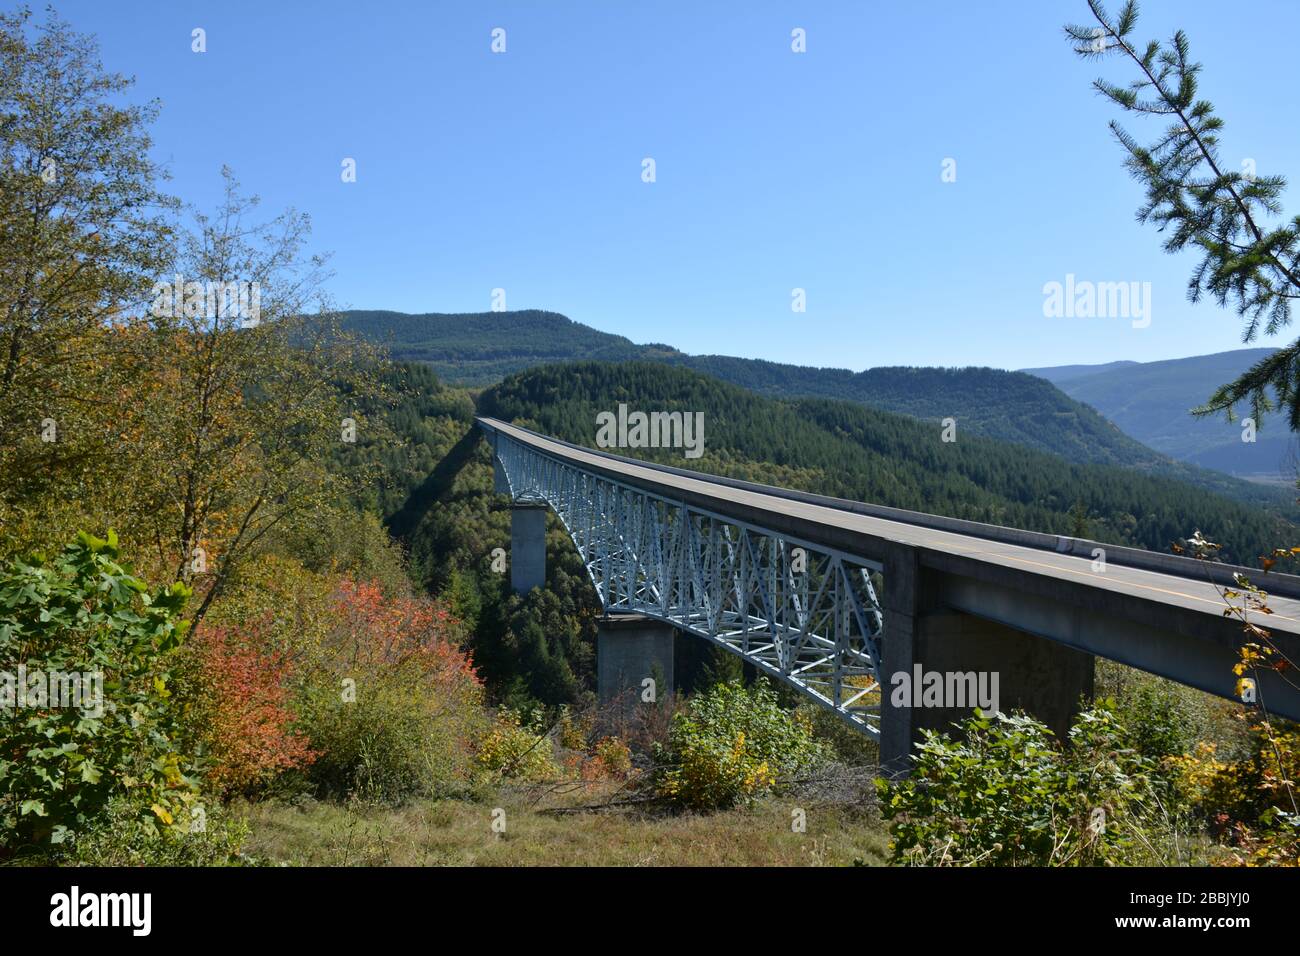 Il ponte Hoffstadt sulla North Fork del fiume Toutle sulla Route 504 nella contea di Cowlitz, Washington state, Stati Uniti, è stato costruito nel 1992. Foto Stock